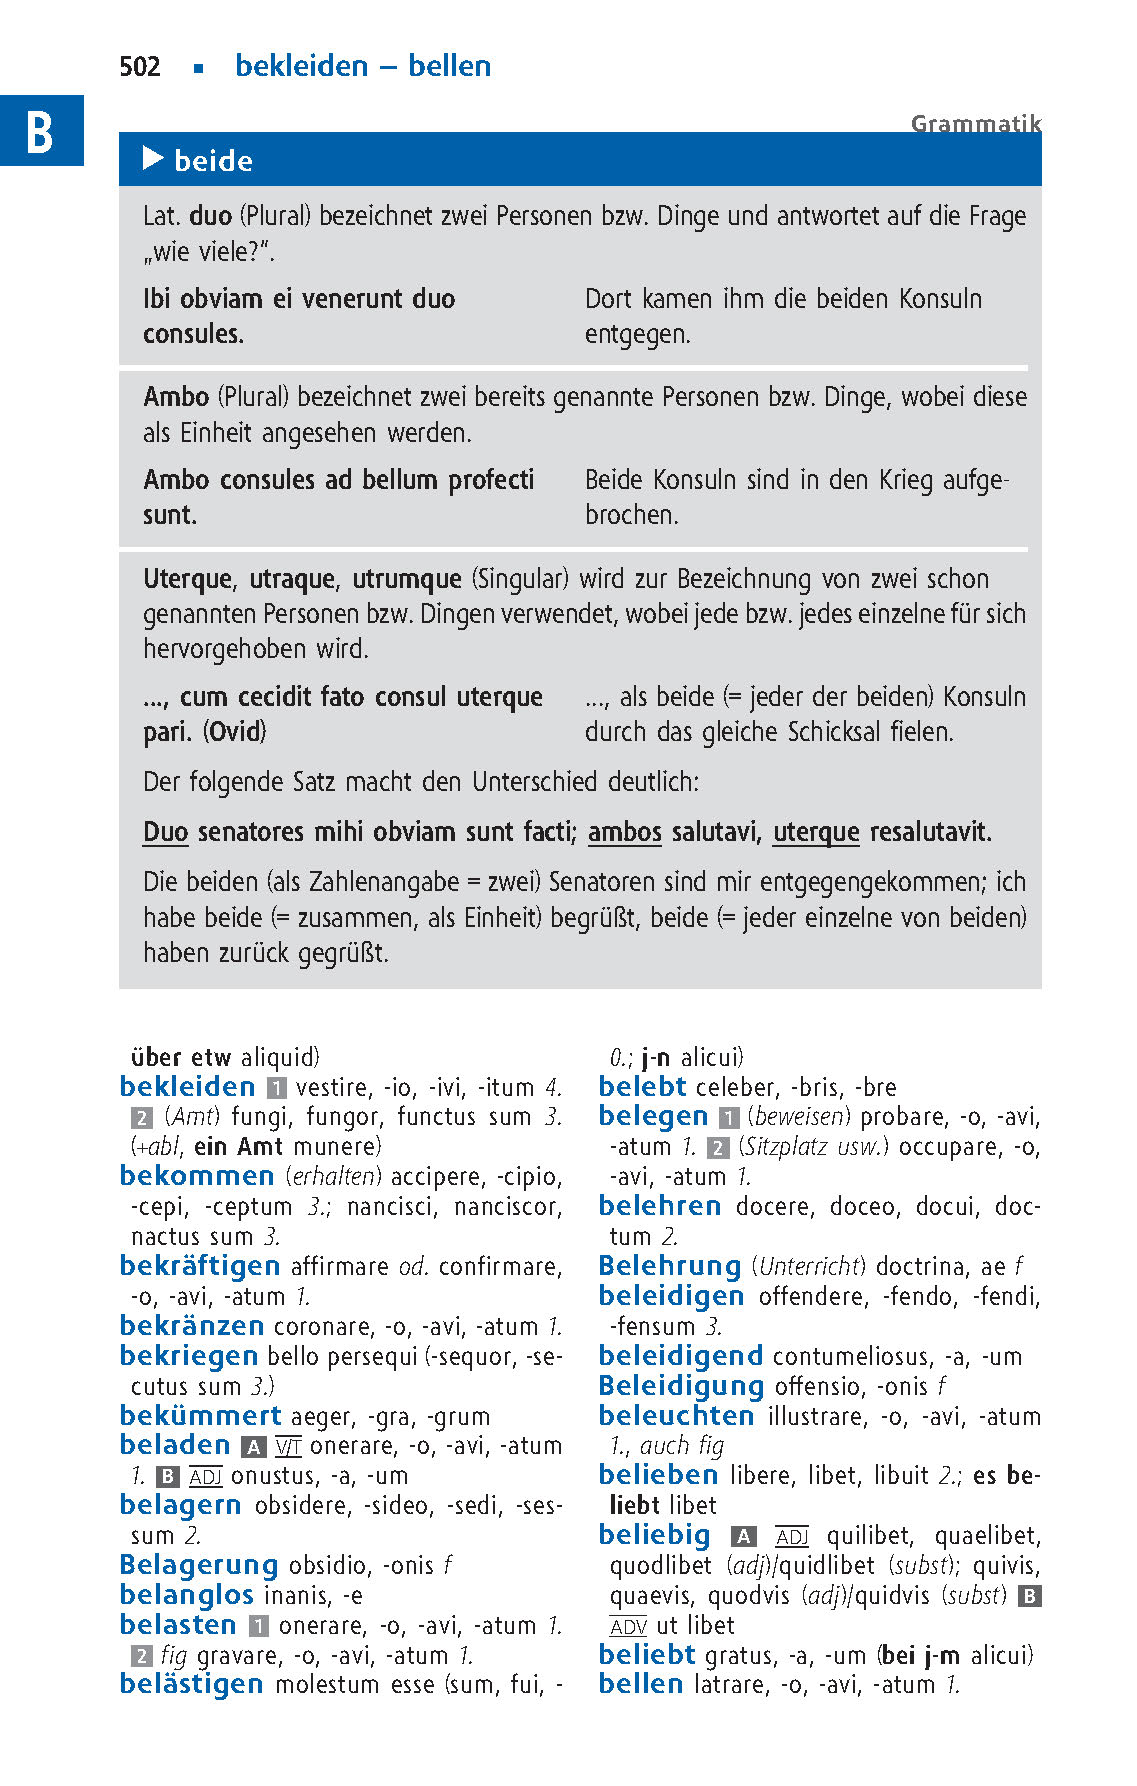 Langenscheidt Schulwörterbuch Latein